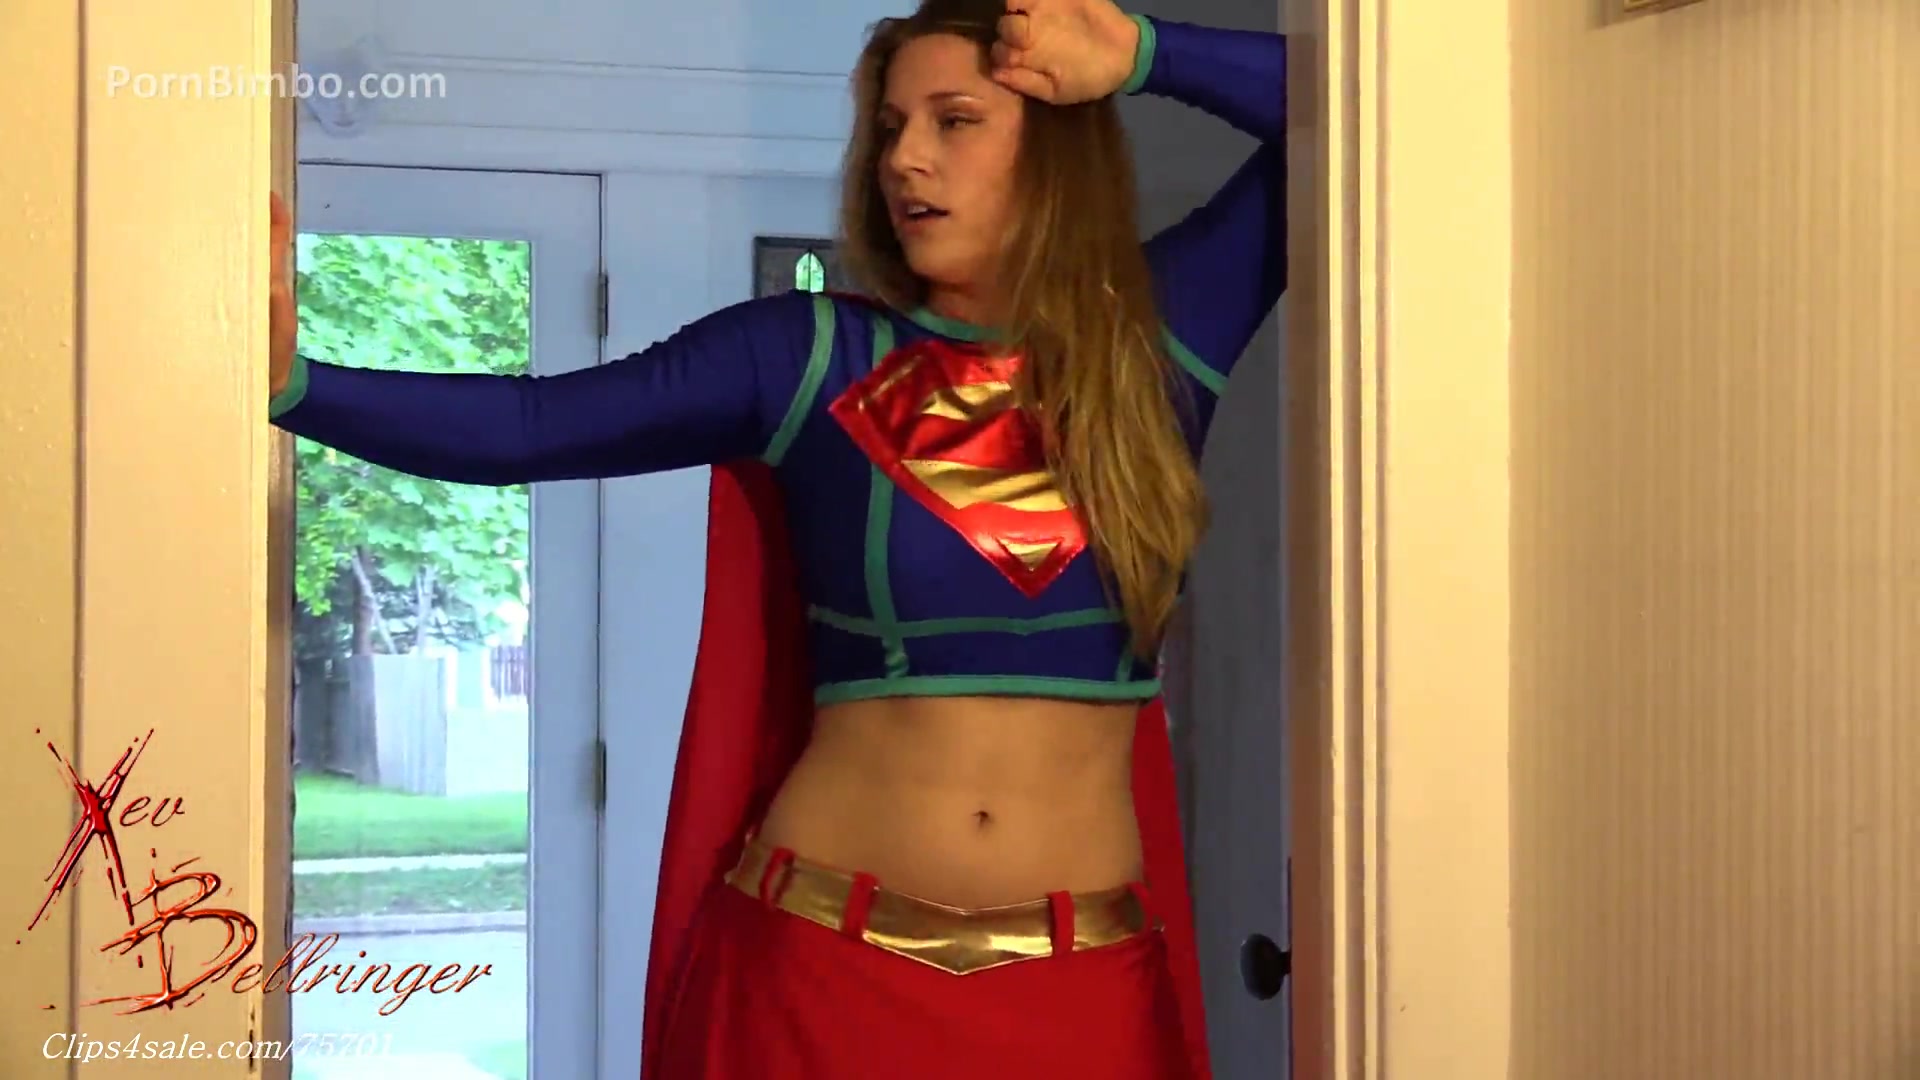 Xev Bellringer â€” Supergirl Becomes Sex Slave